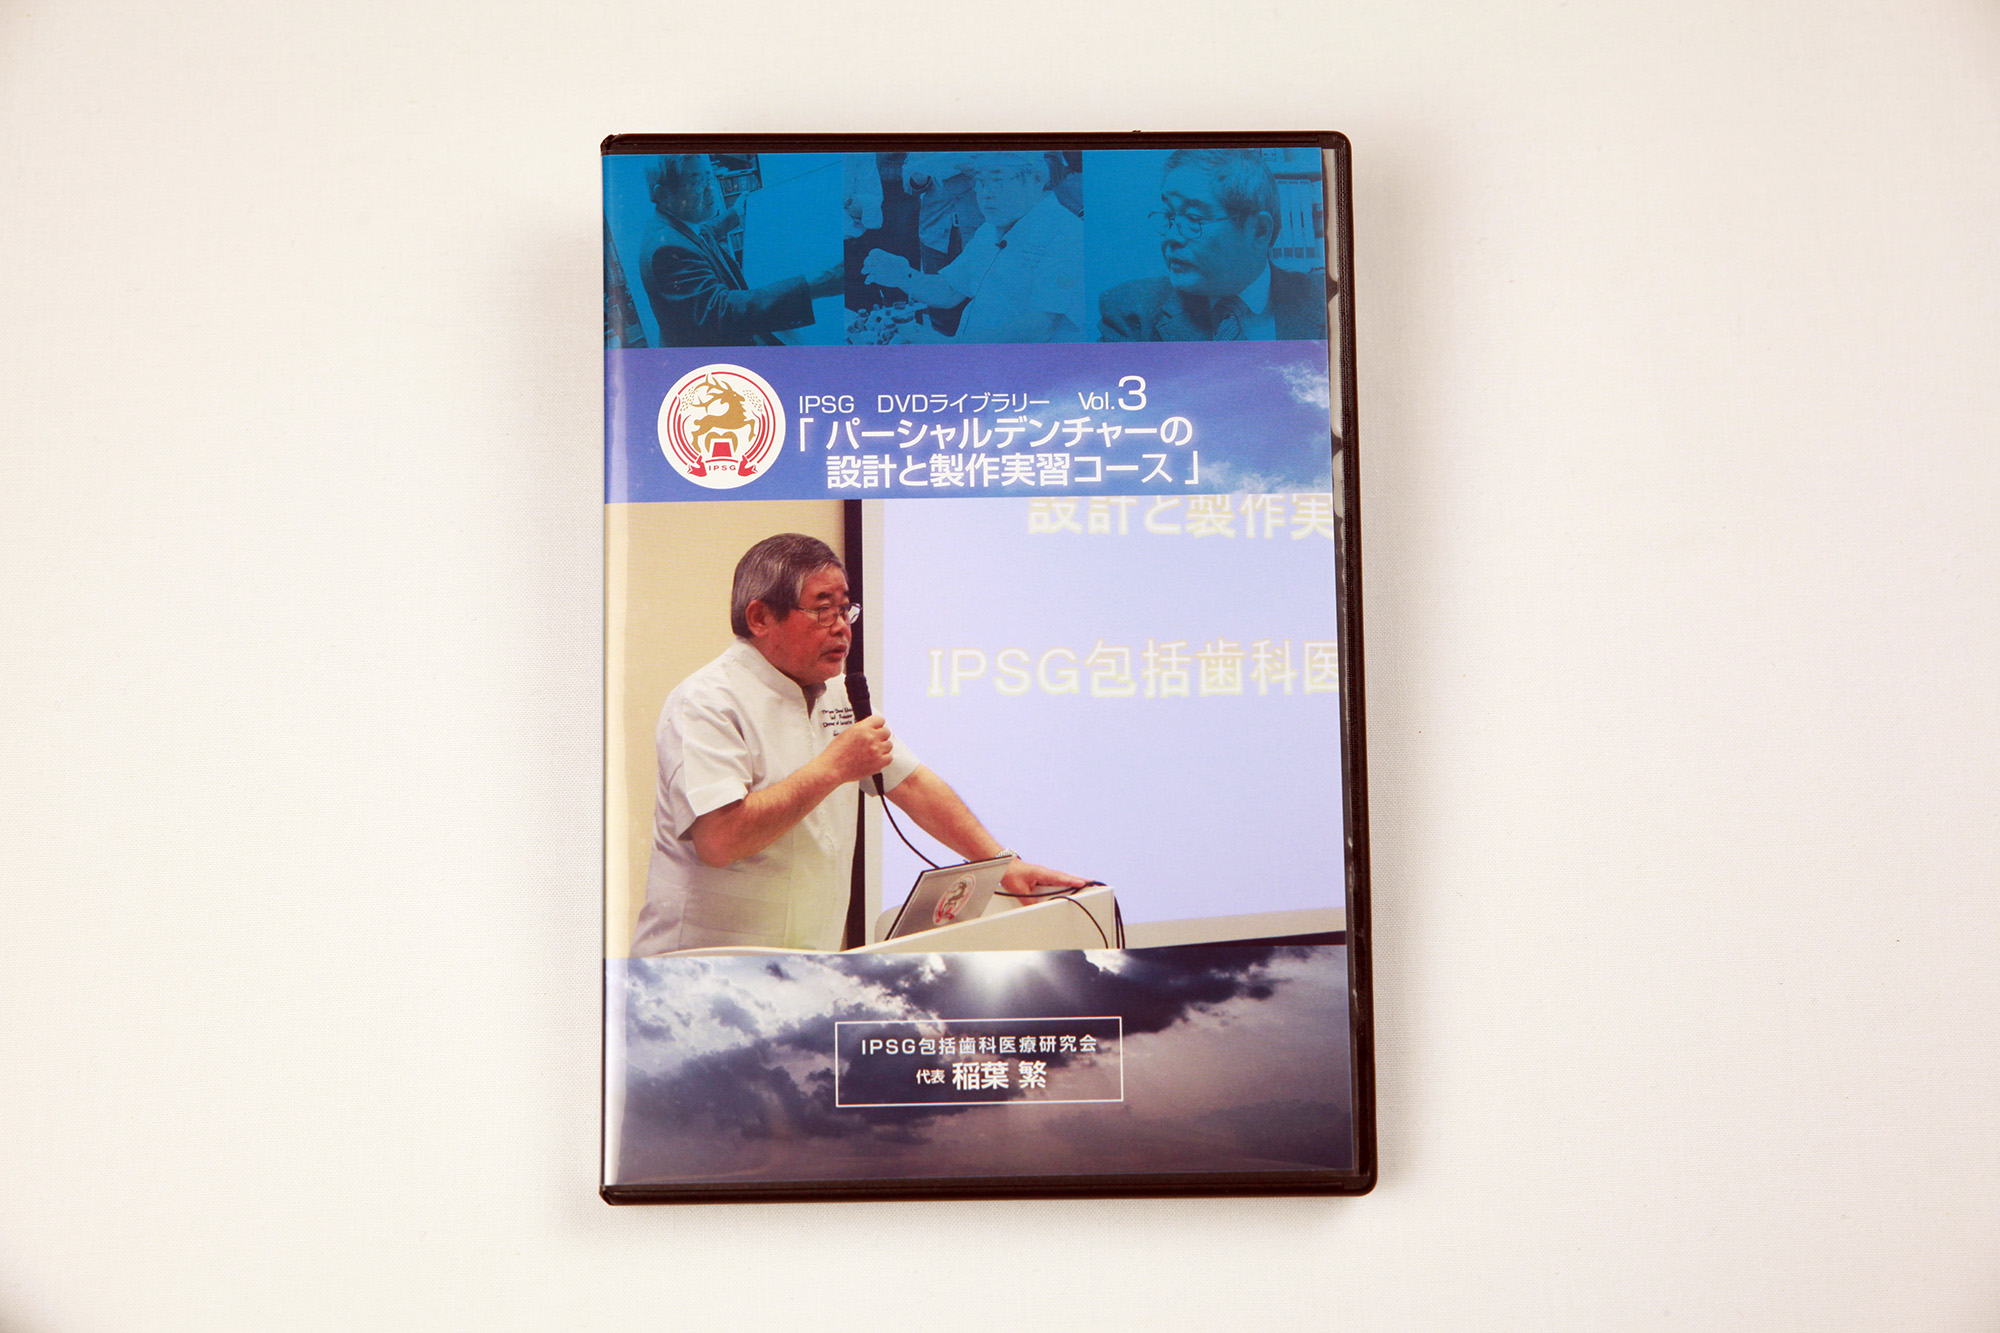 IPSG DVDライブラリーVol.3『パーシャルデンチャーの設計と製作実習コース』